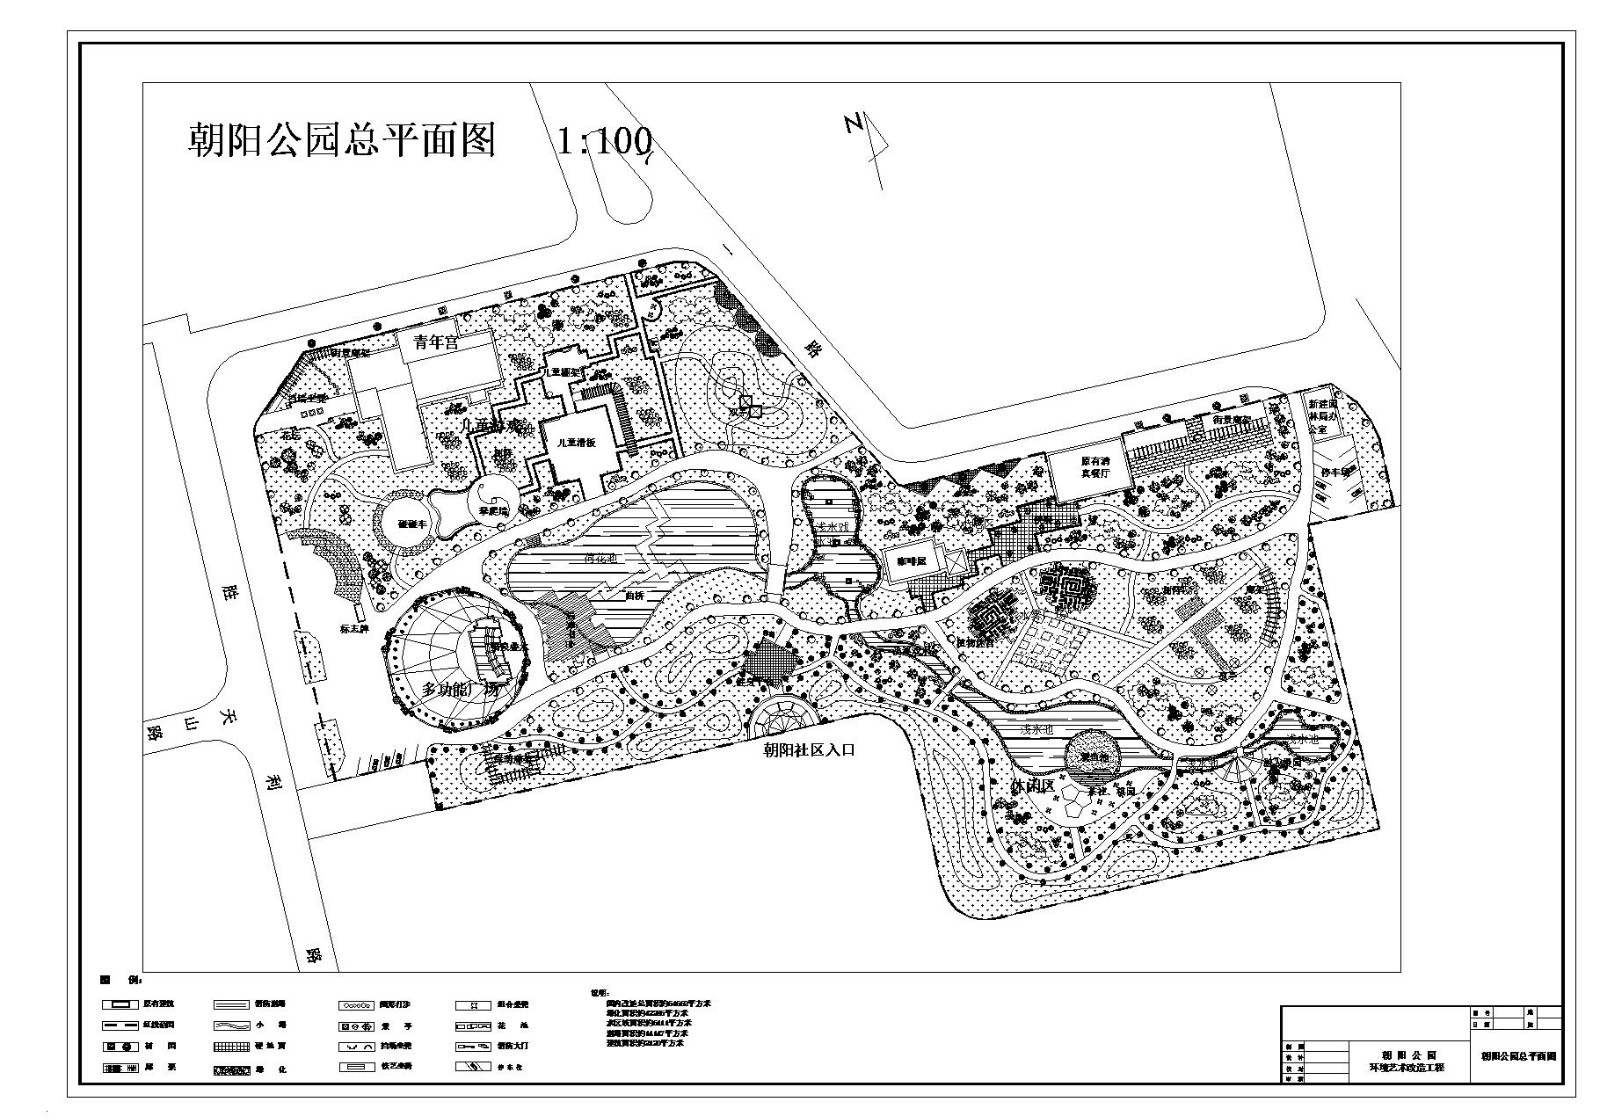 北京某公园总规划平面图